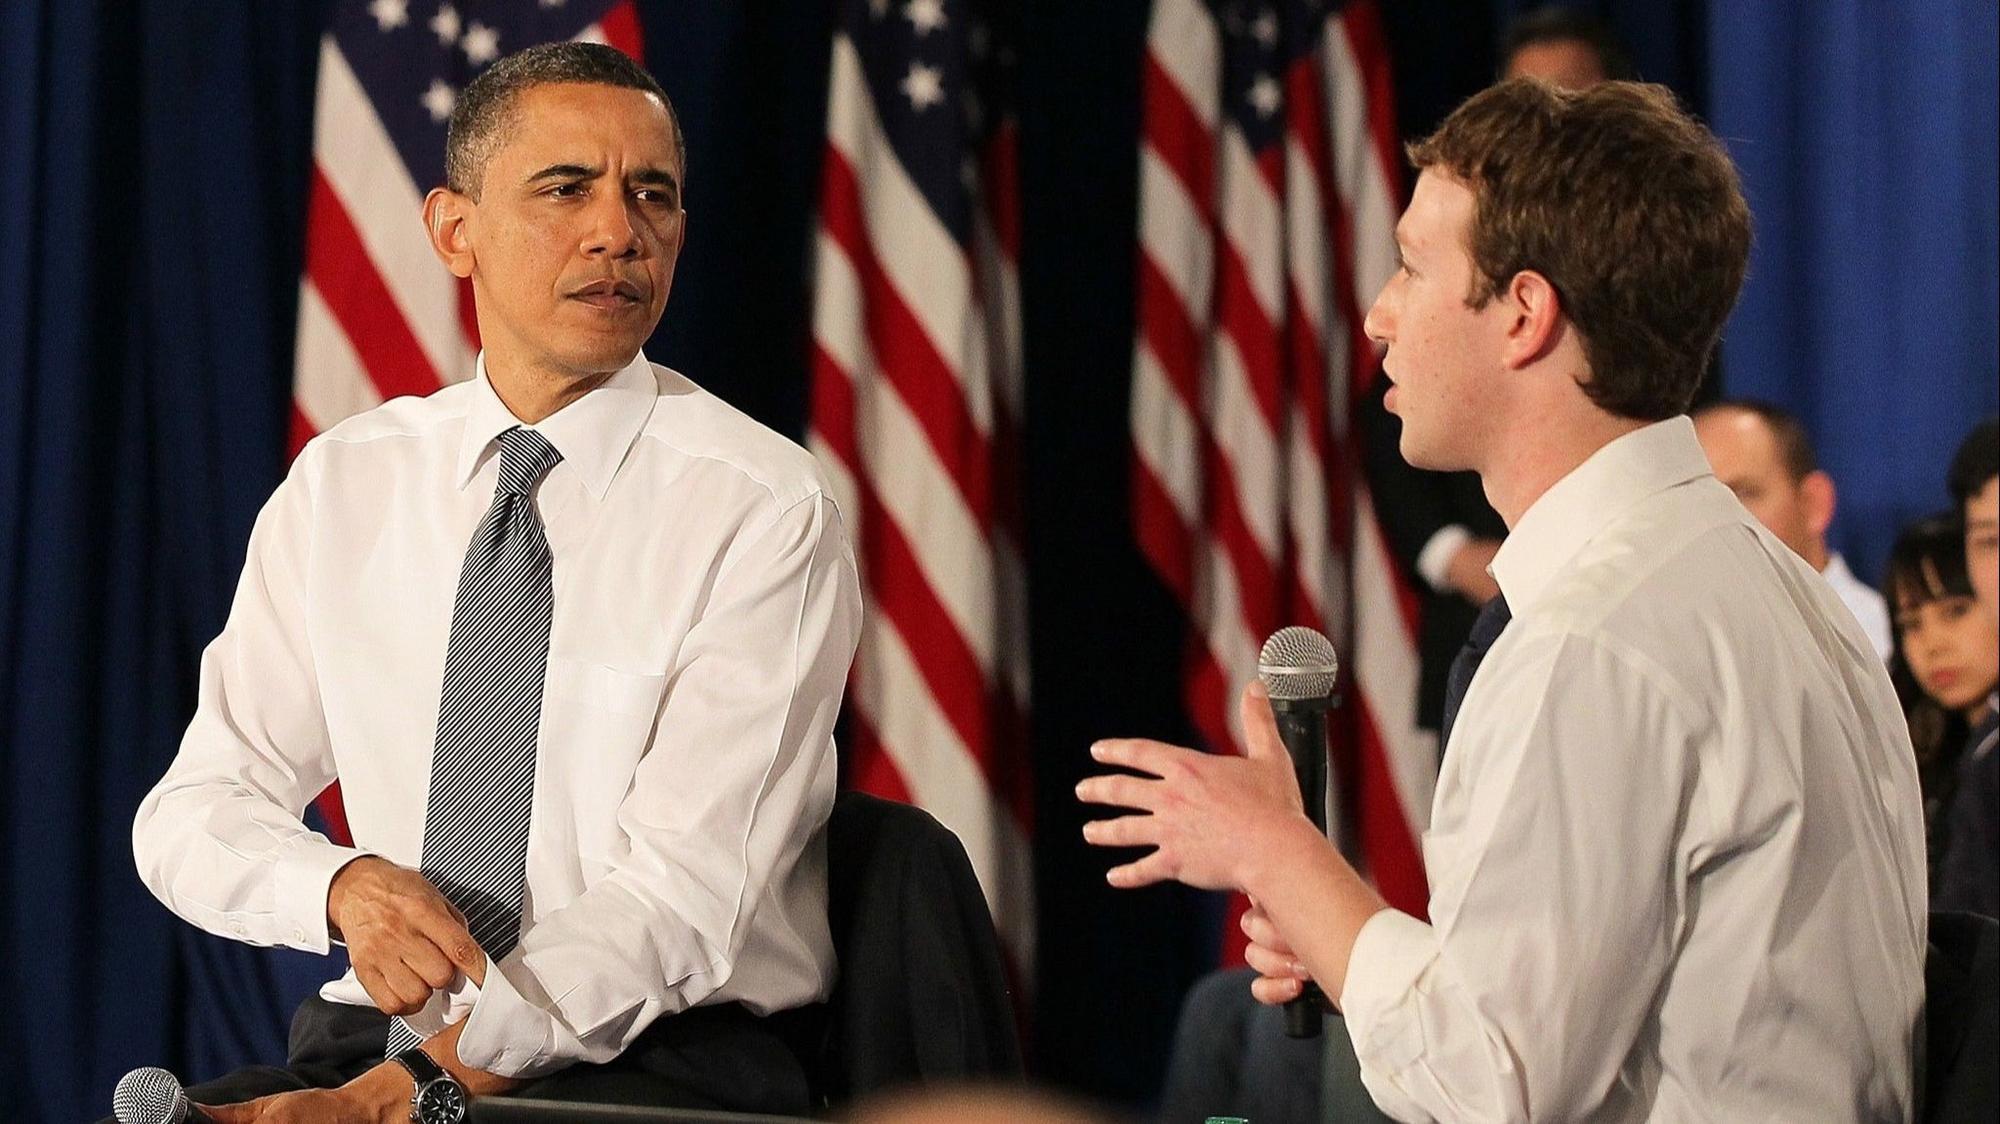 El truco que recomiendan Zuckerberg y Obama para rendir mejor no tiene base